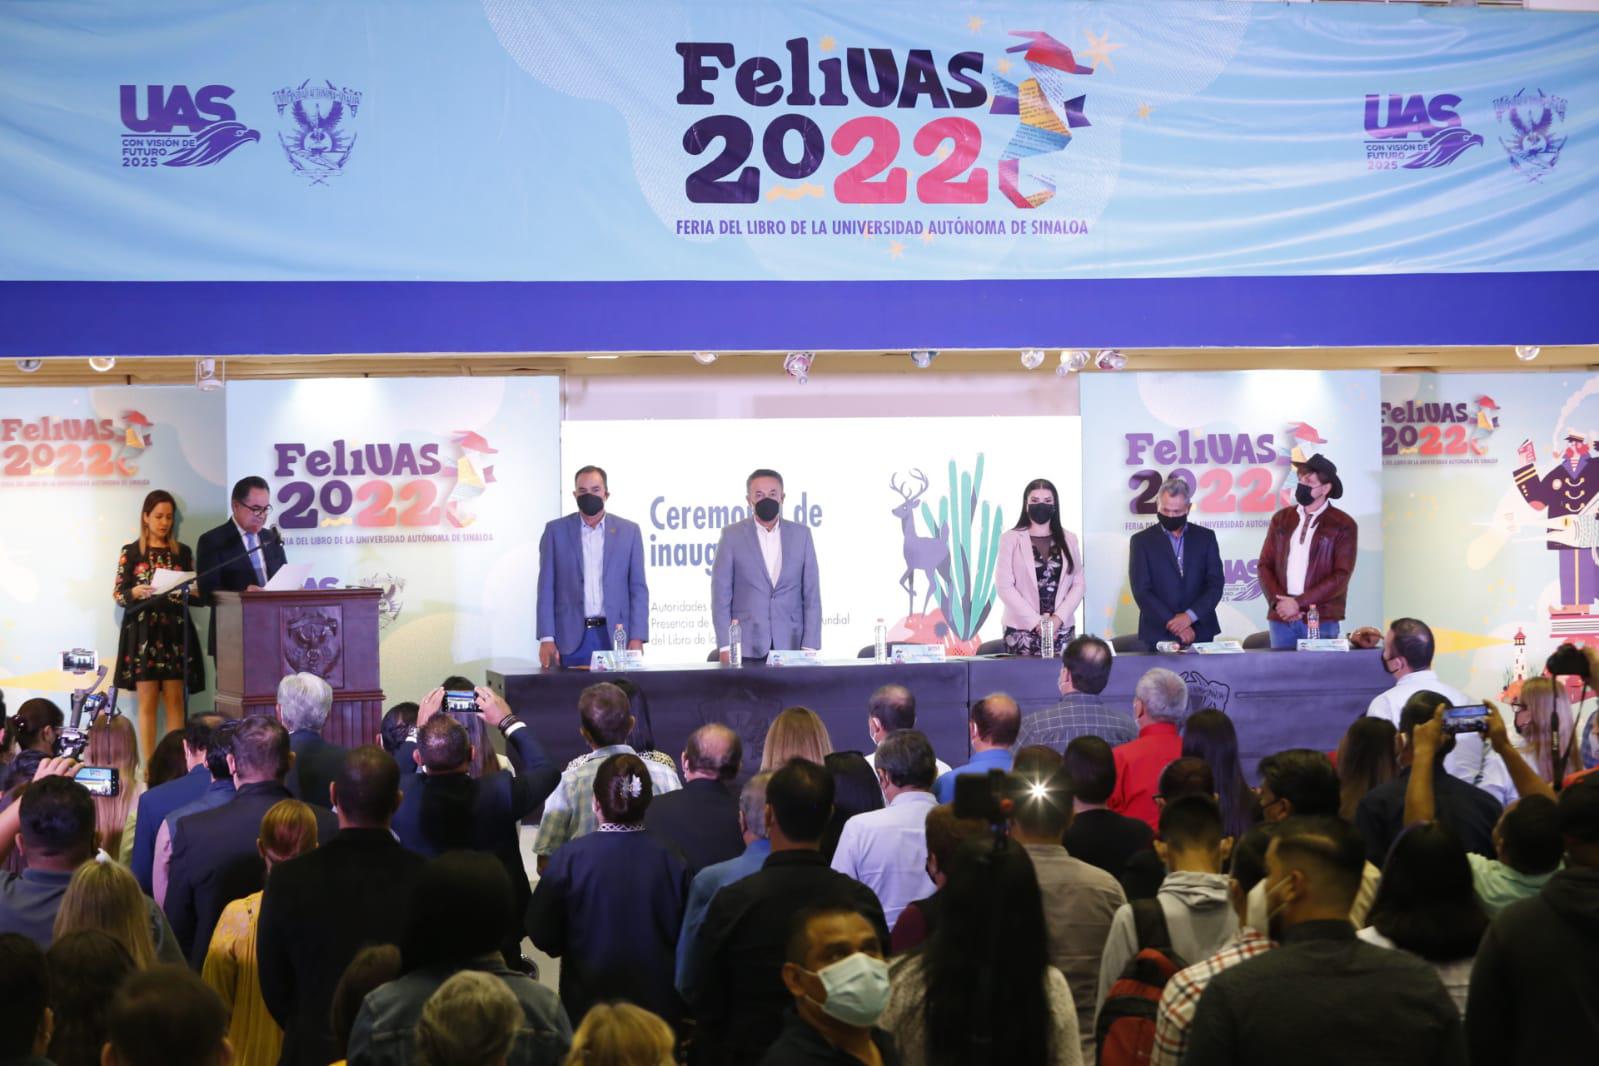 $!El Rector de la Universidad Autónoma de Sinaloa, Jesús Madueña Molina, en compañía de directivos e invitados especiales, inauguró el evento.